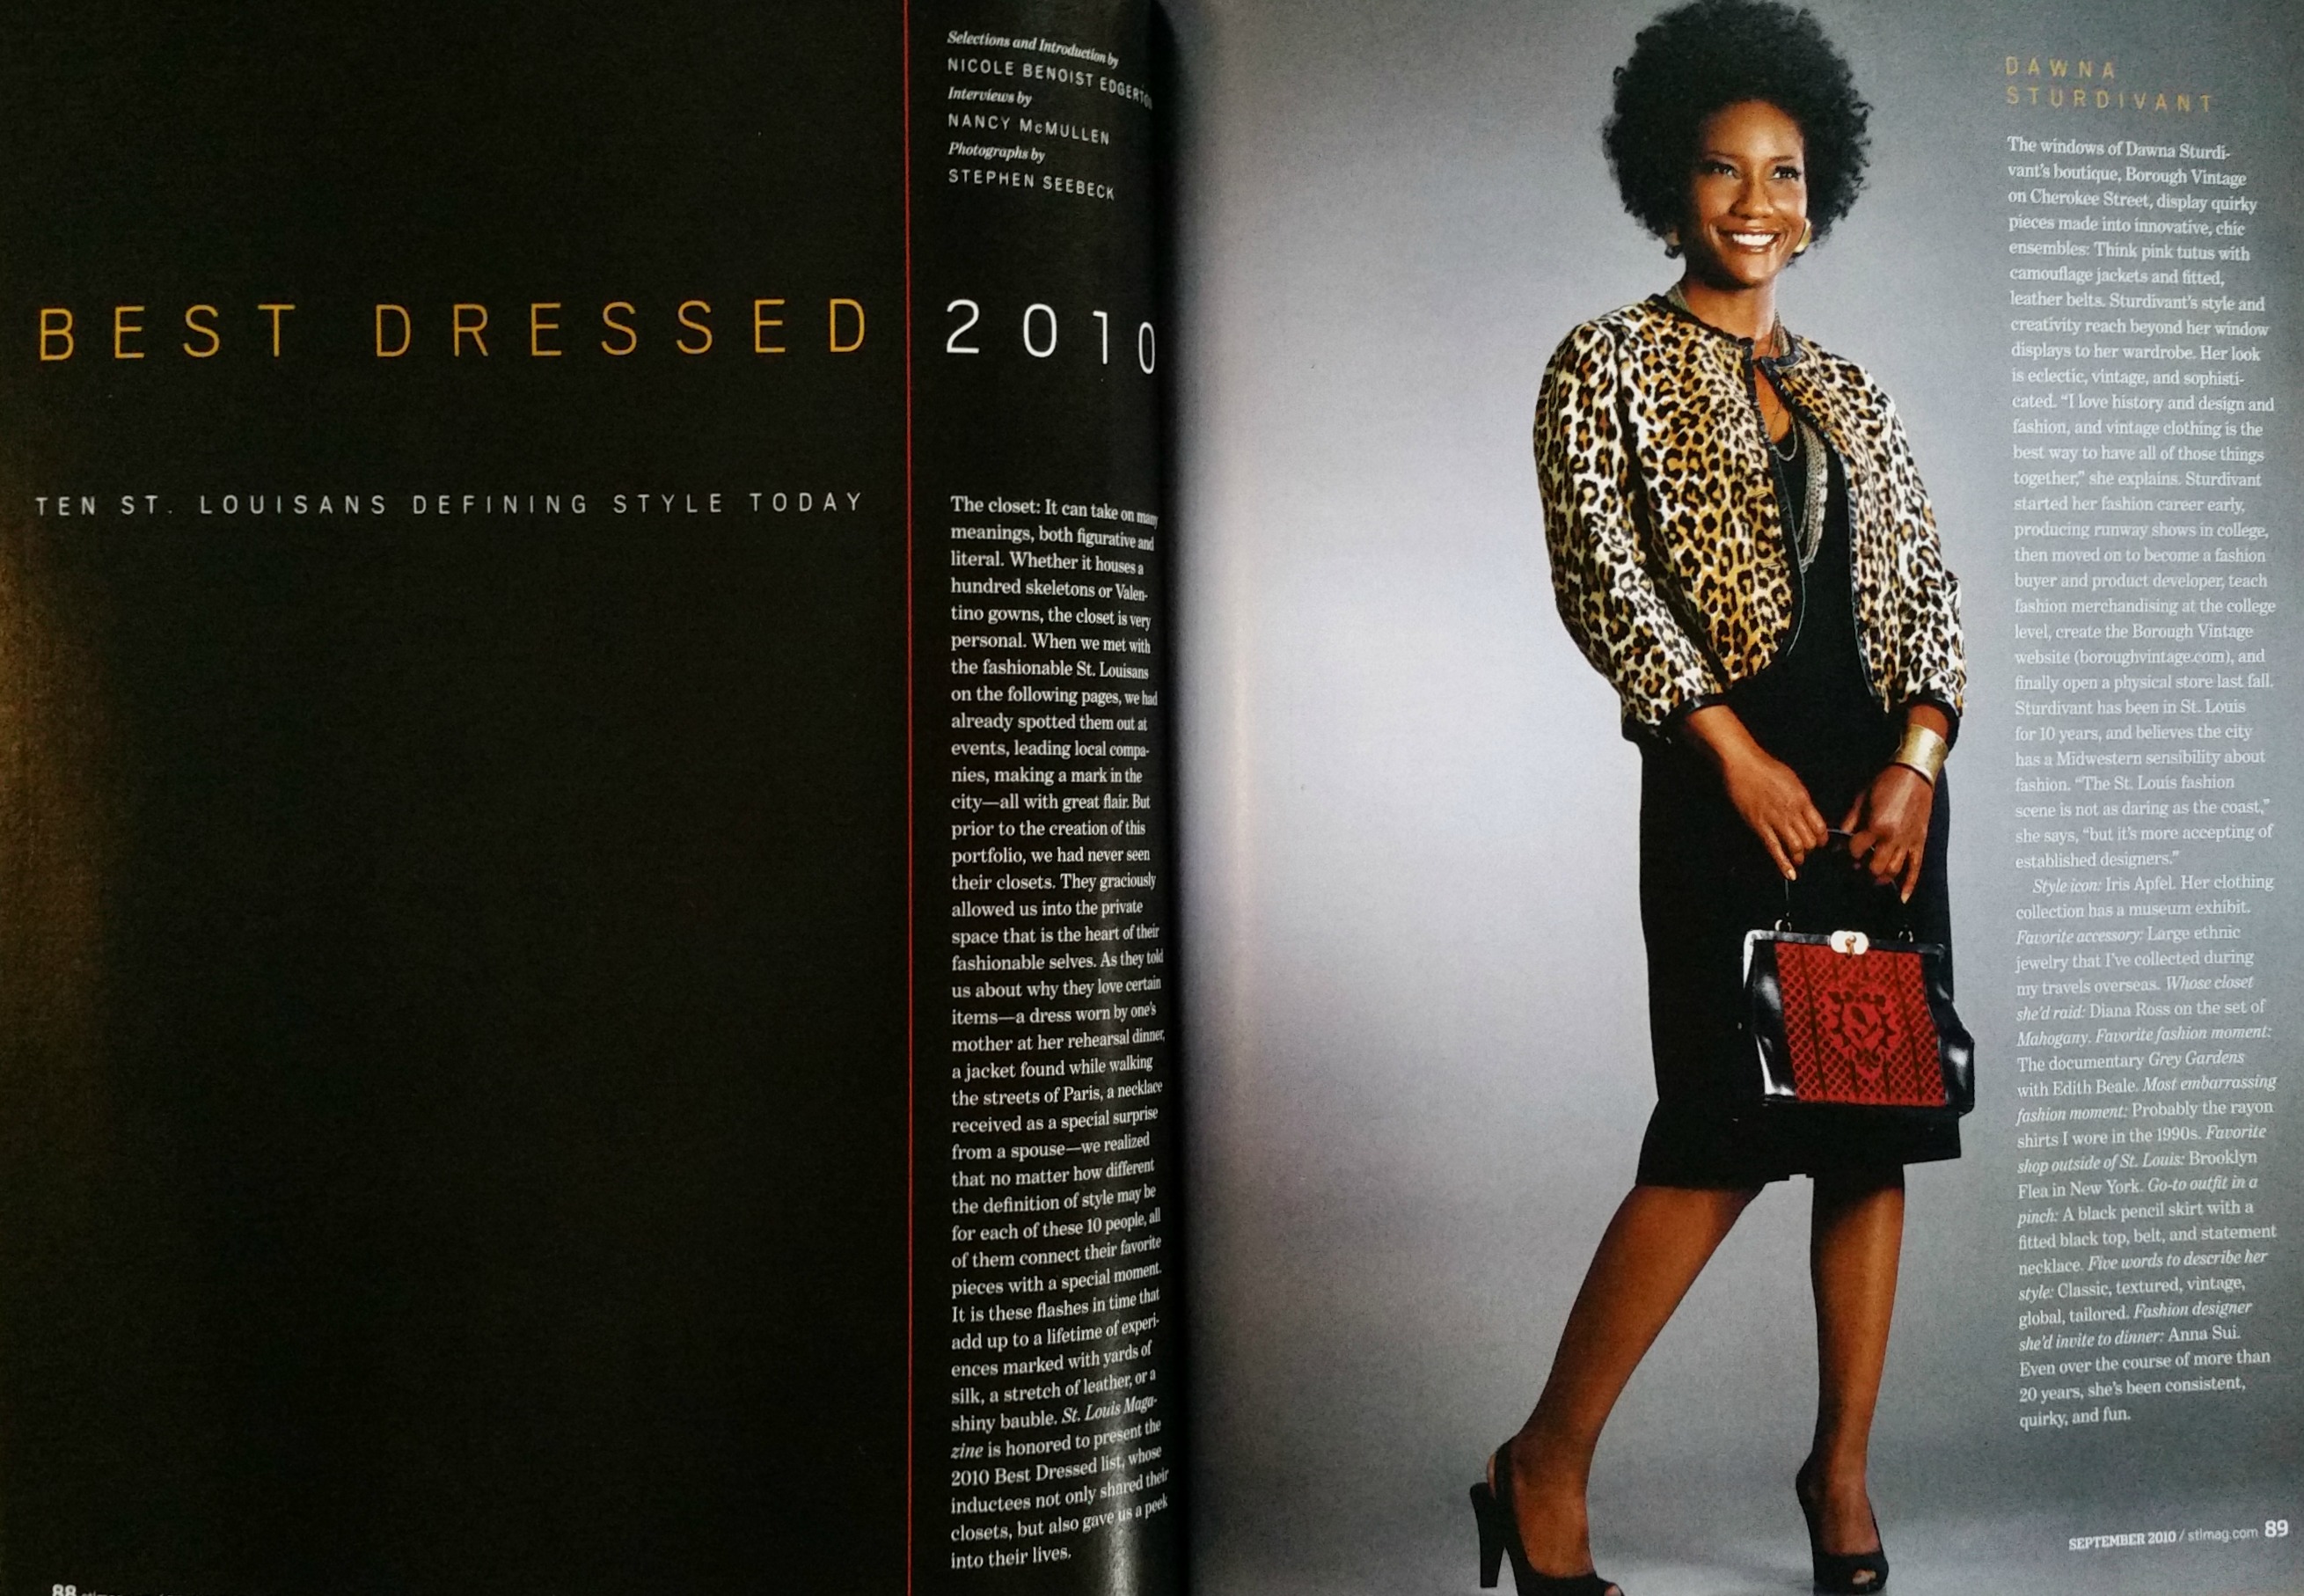 st.-louis-magazine-bestdressed-2010.jpg